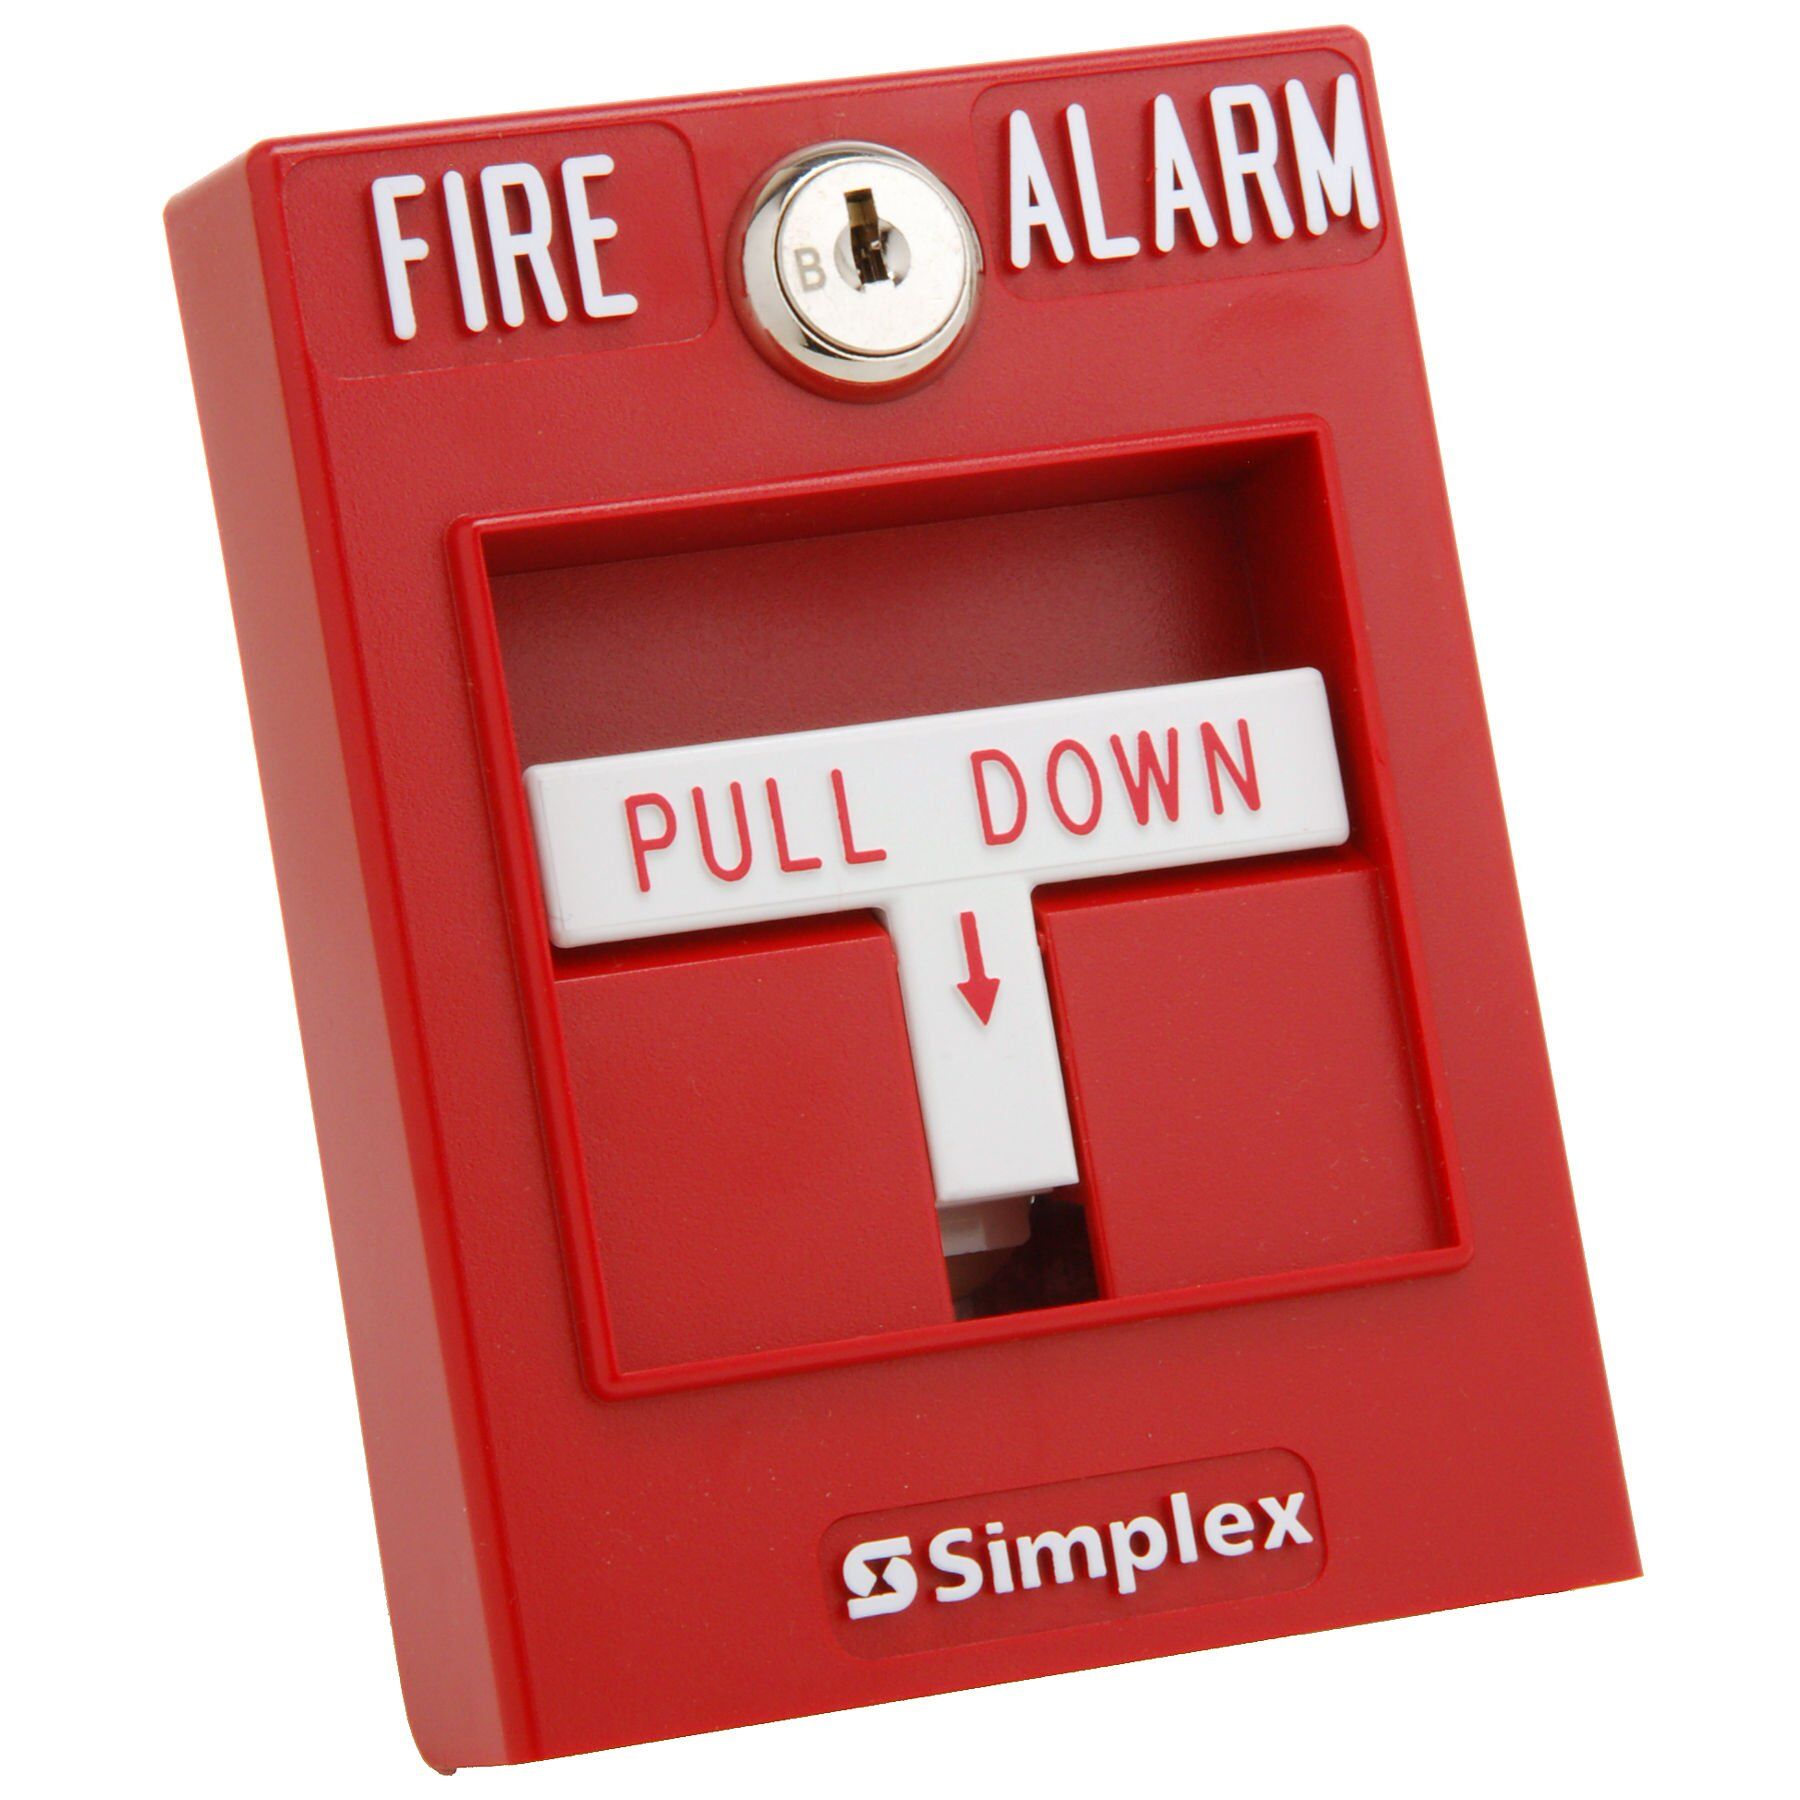 Оборудование для охранно-пожарной сигнализации Simplex 2099-9804